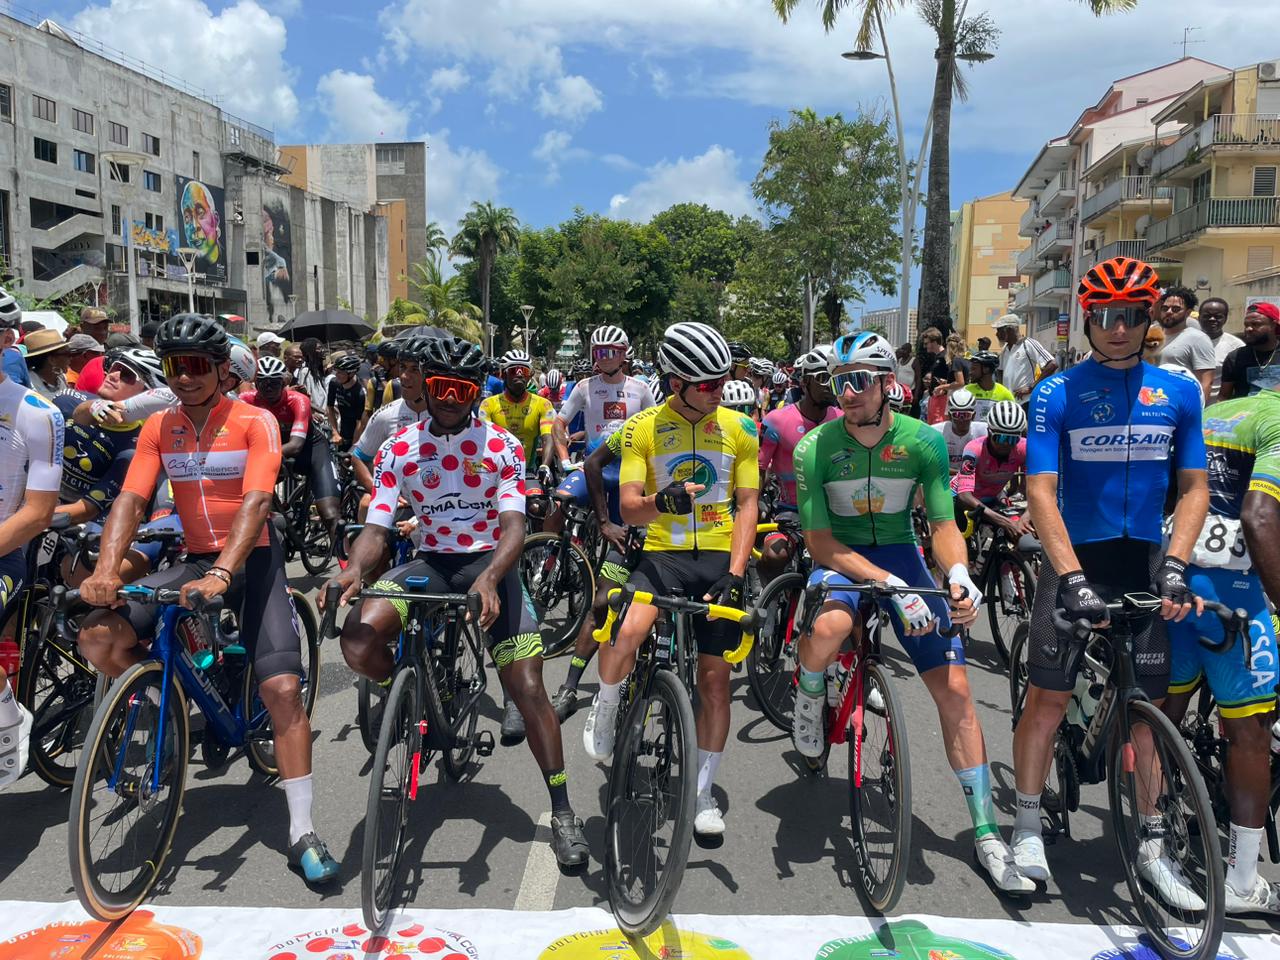     En raison des JO de Paris, le Tour Cycliste de Guadeloupe aura lieu fin août

